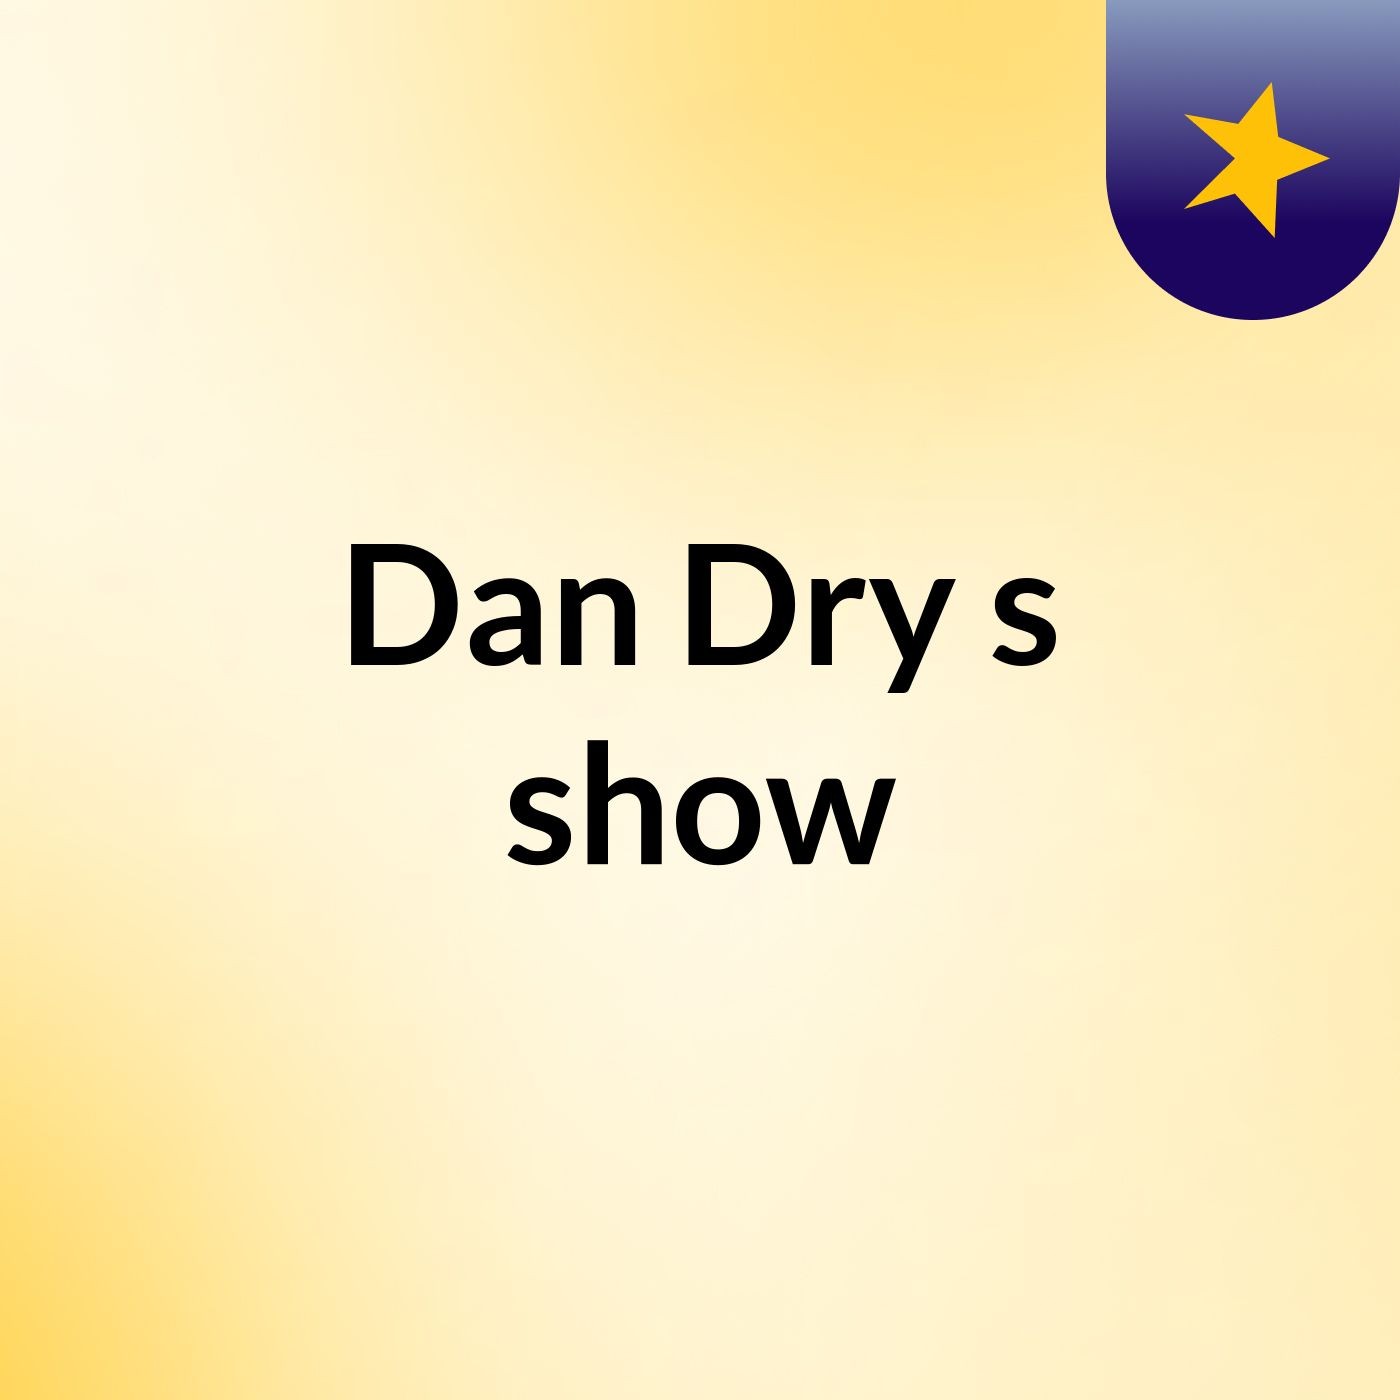 Dan Dry's show